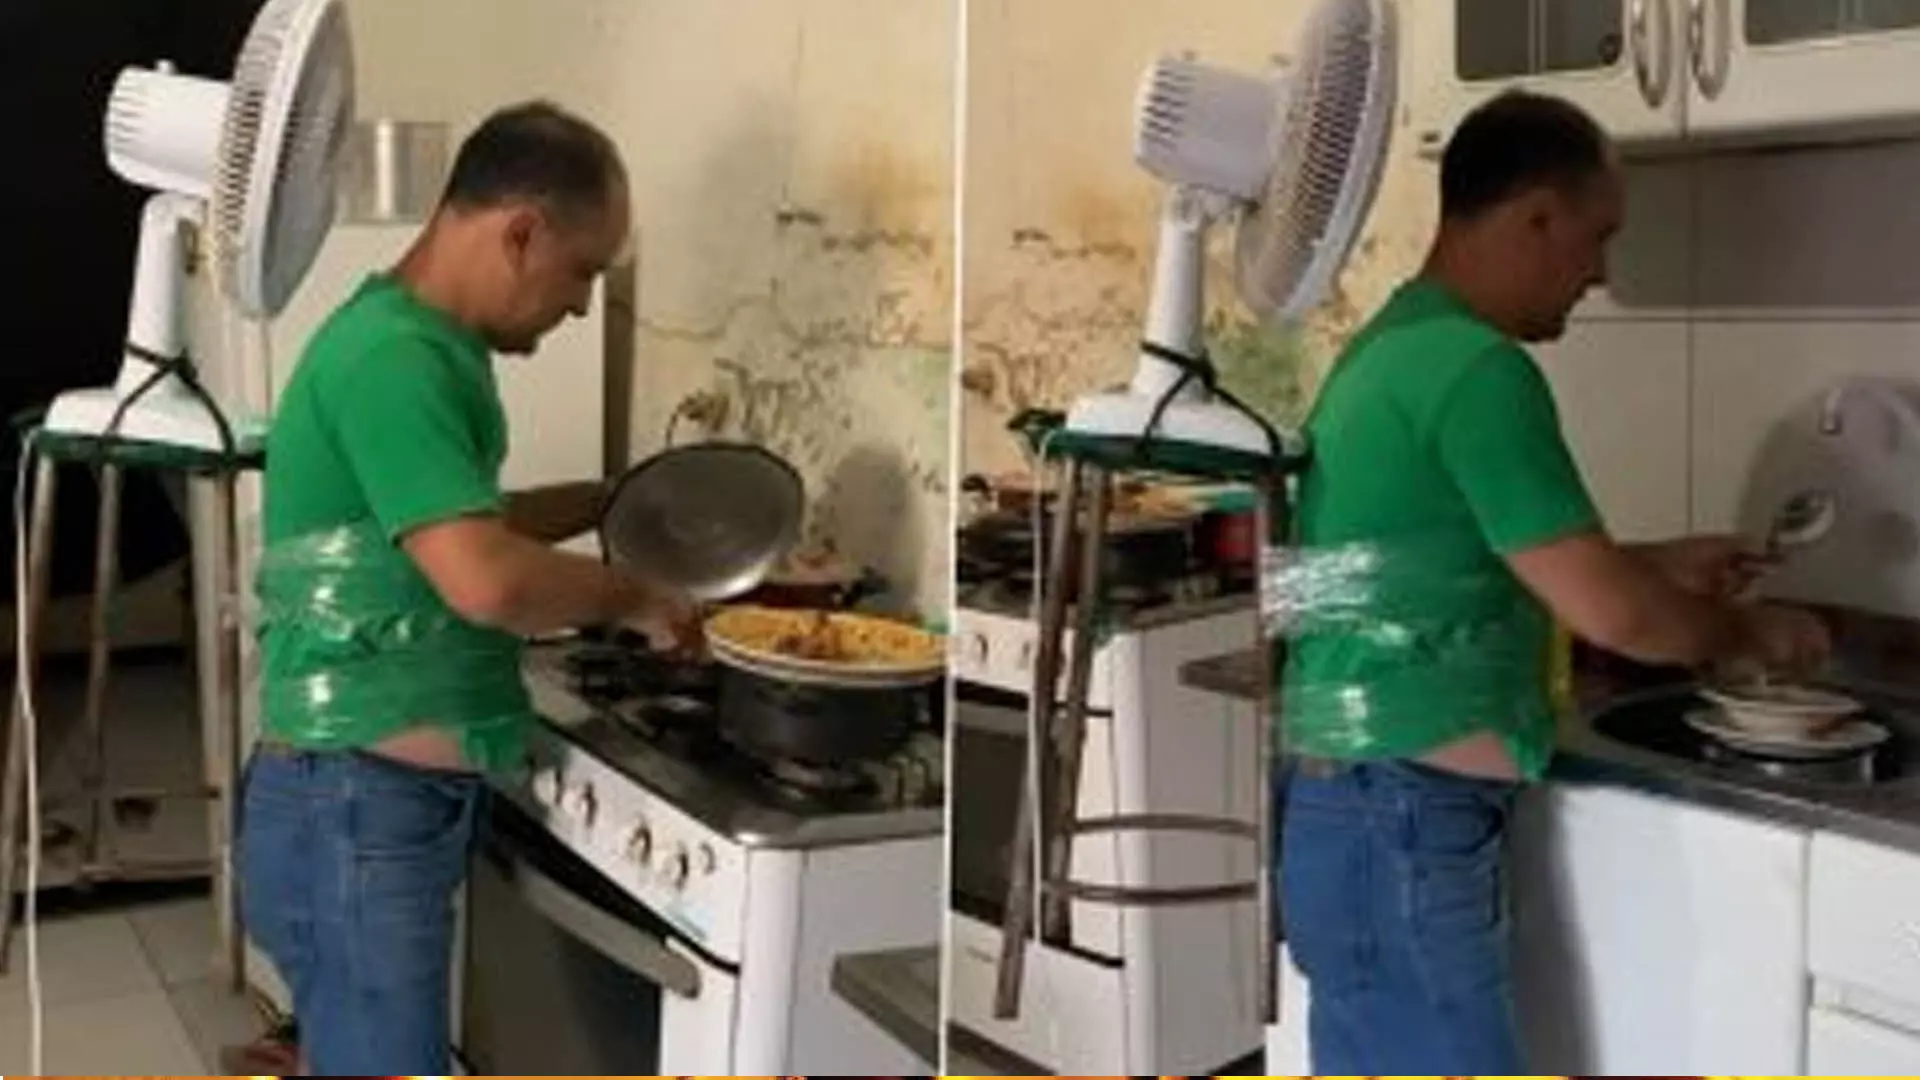 खाना बनाते समय गर्मी से बचने के लिए शख्स ने भिड़ाया जबरदस्त जुगाड़, Video